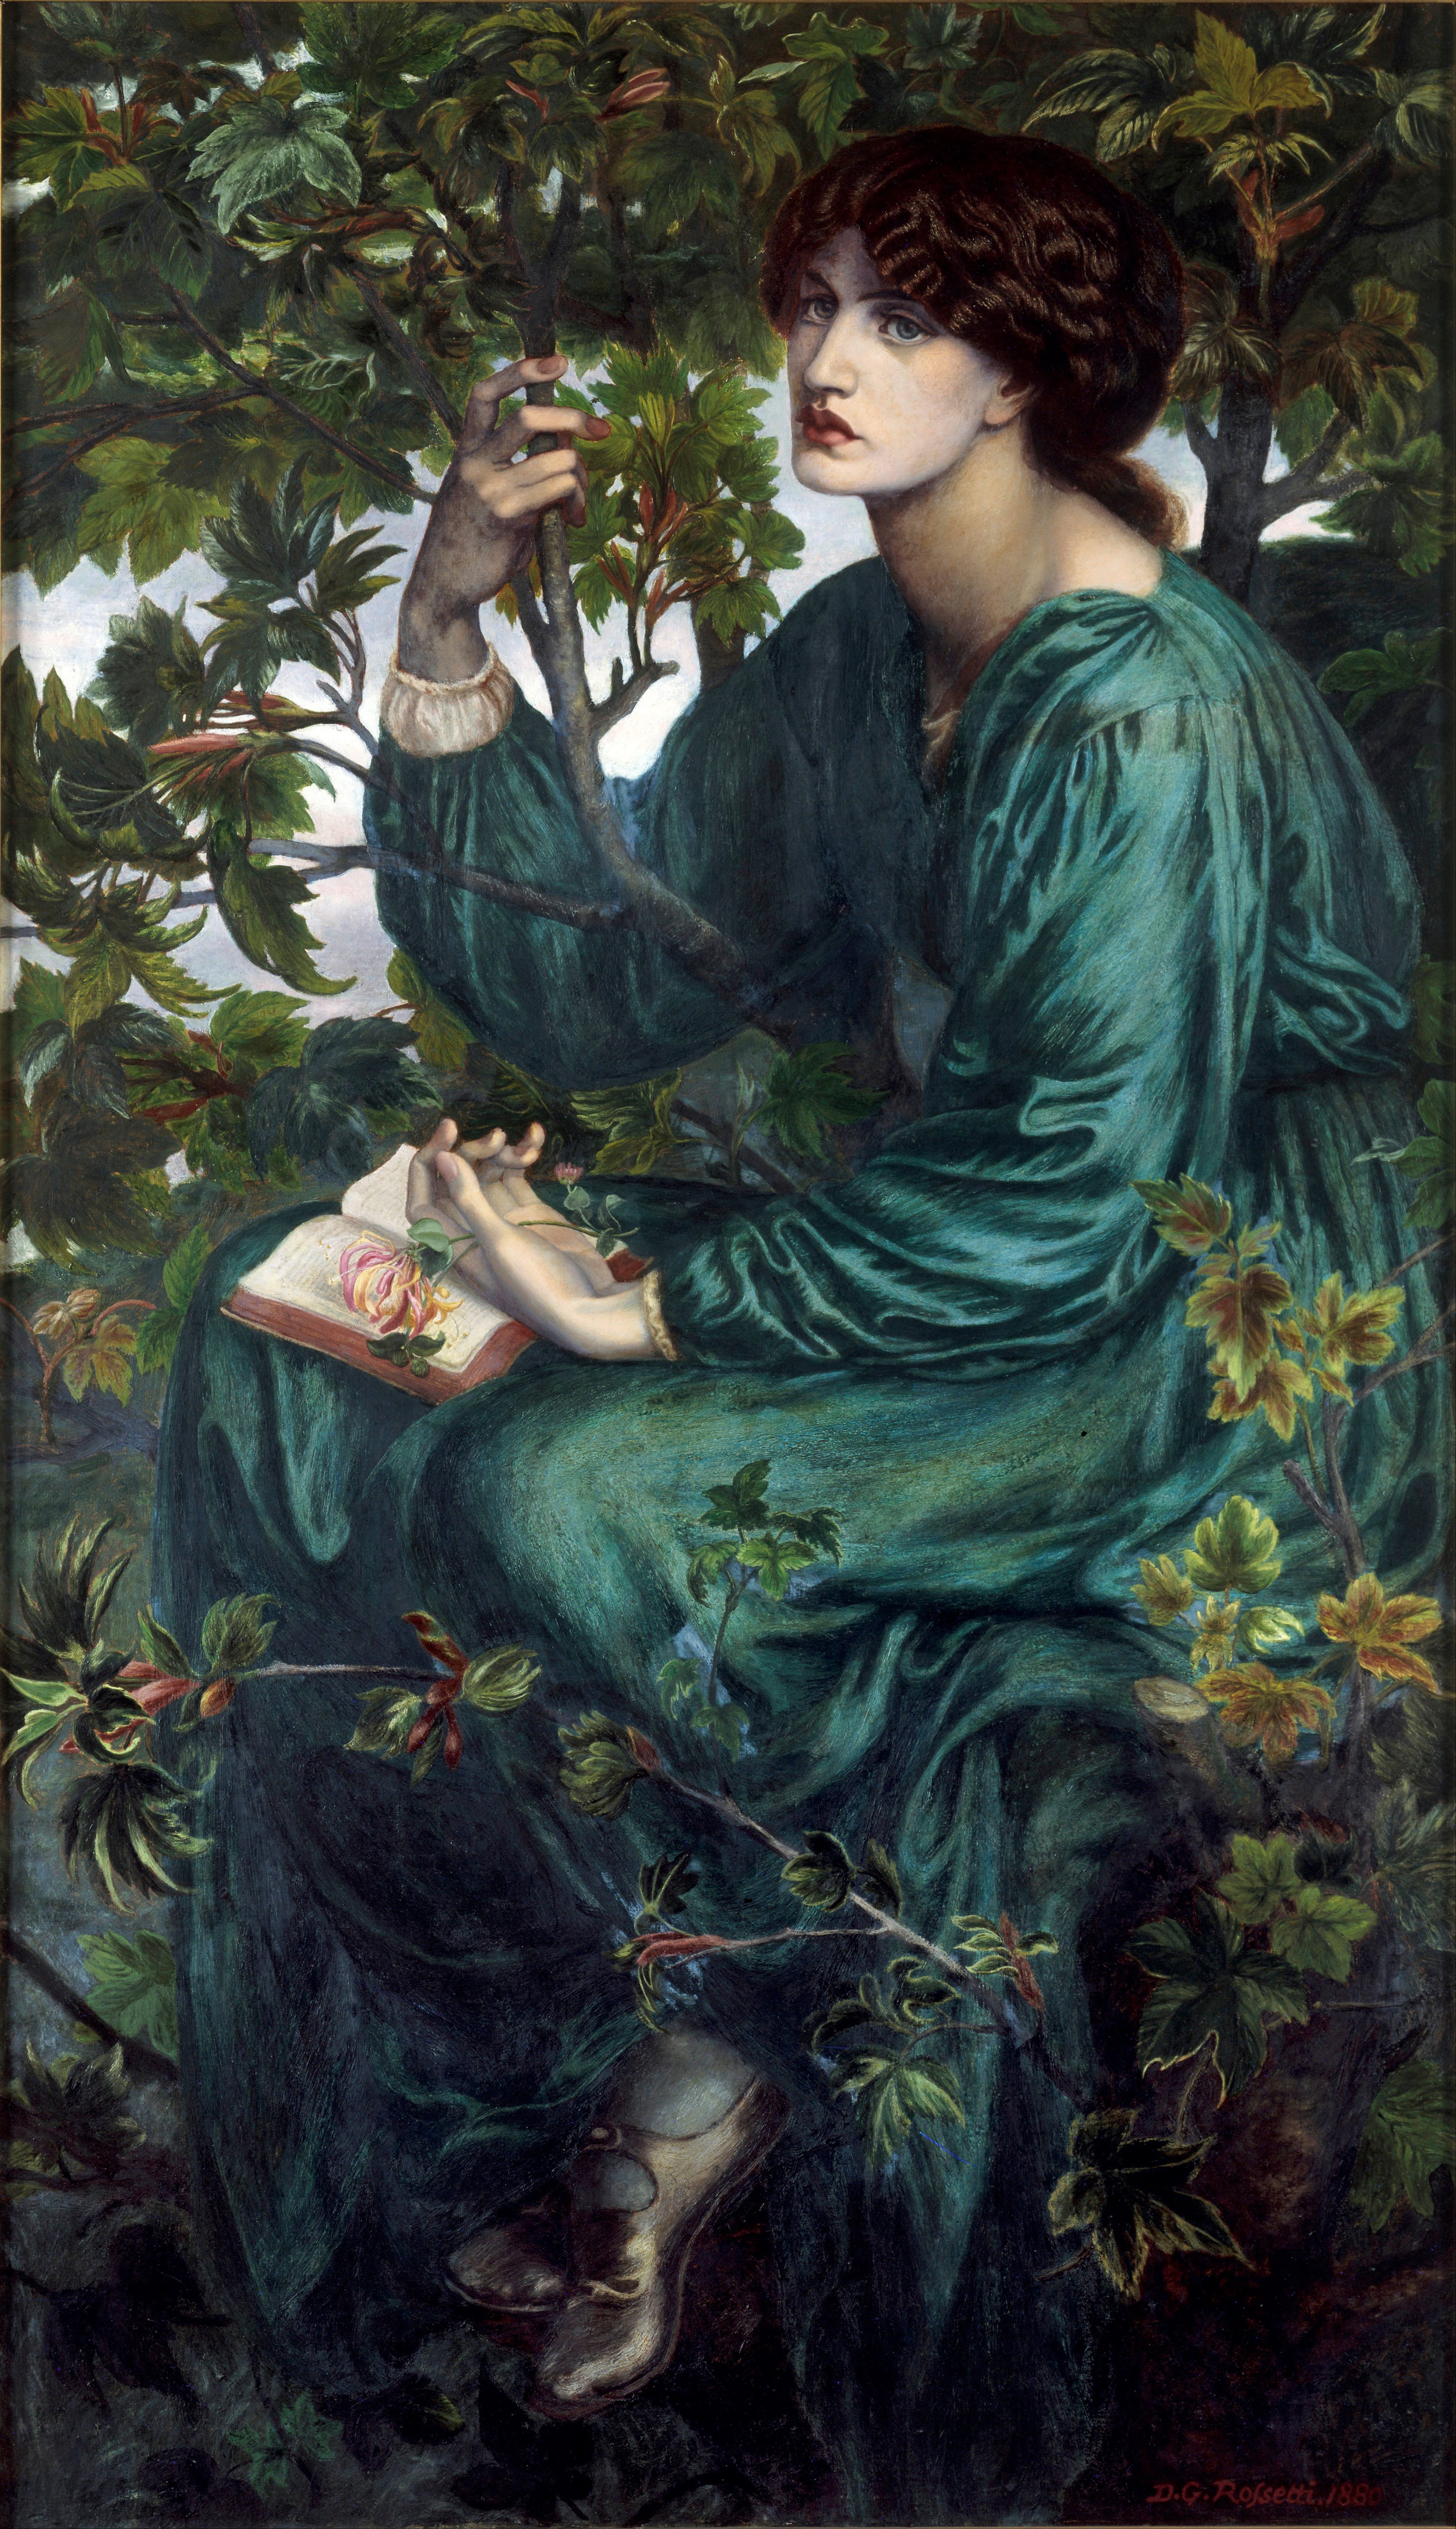 Denní snění by Dante Gabriel Rossetti - 1880 - 158,7 x 92,7 cm  